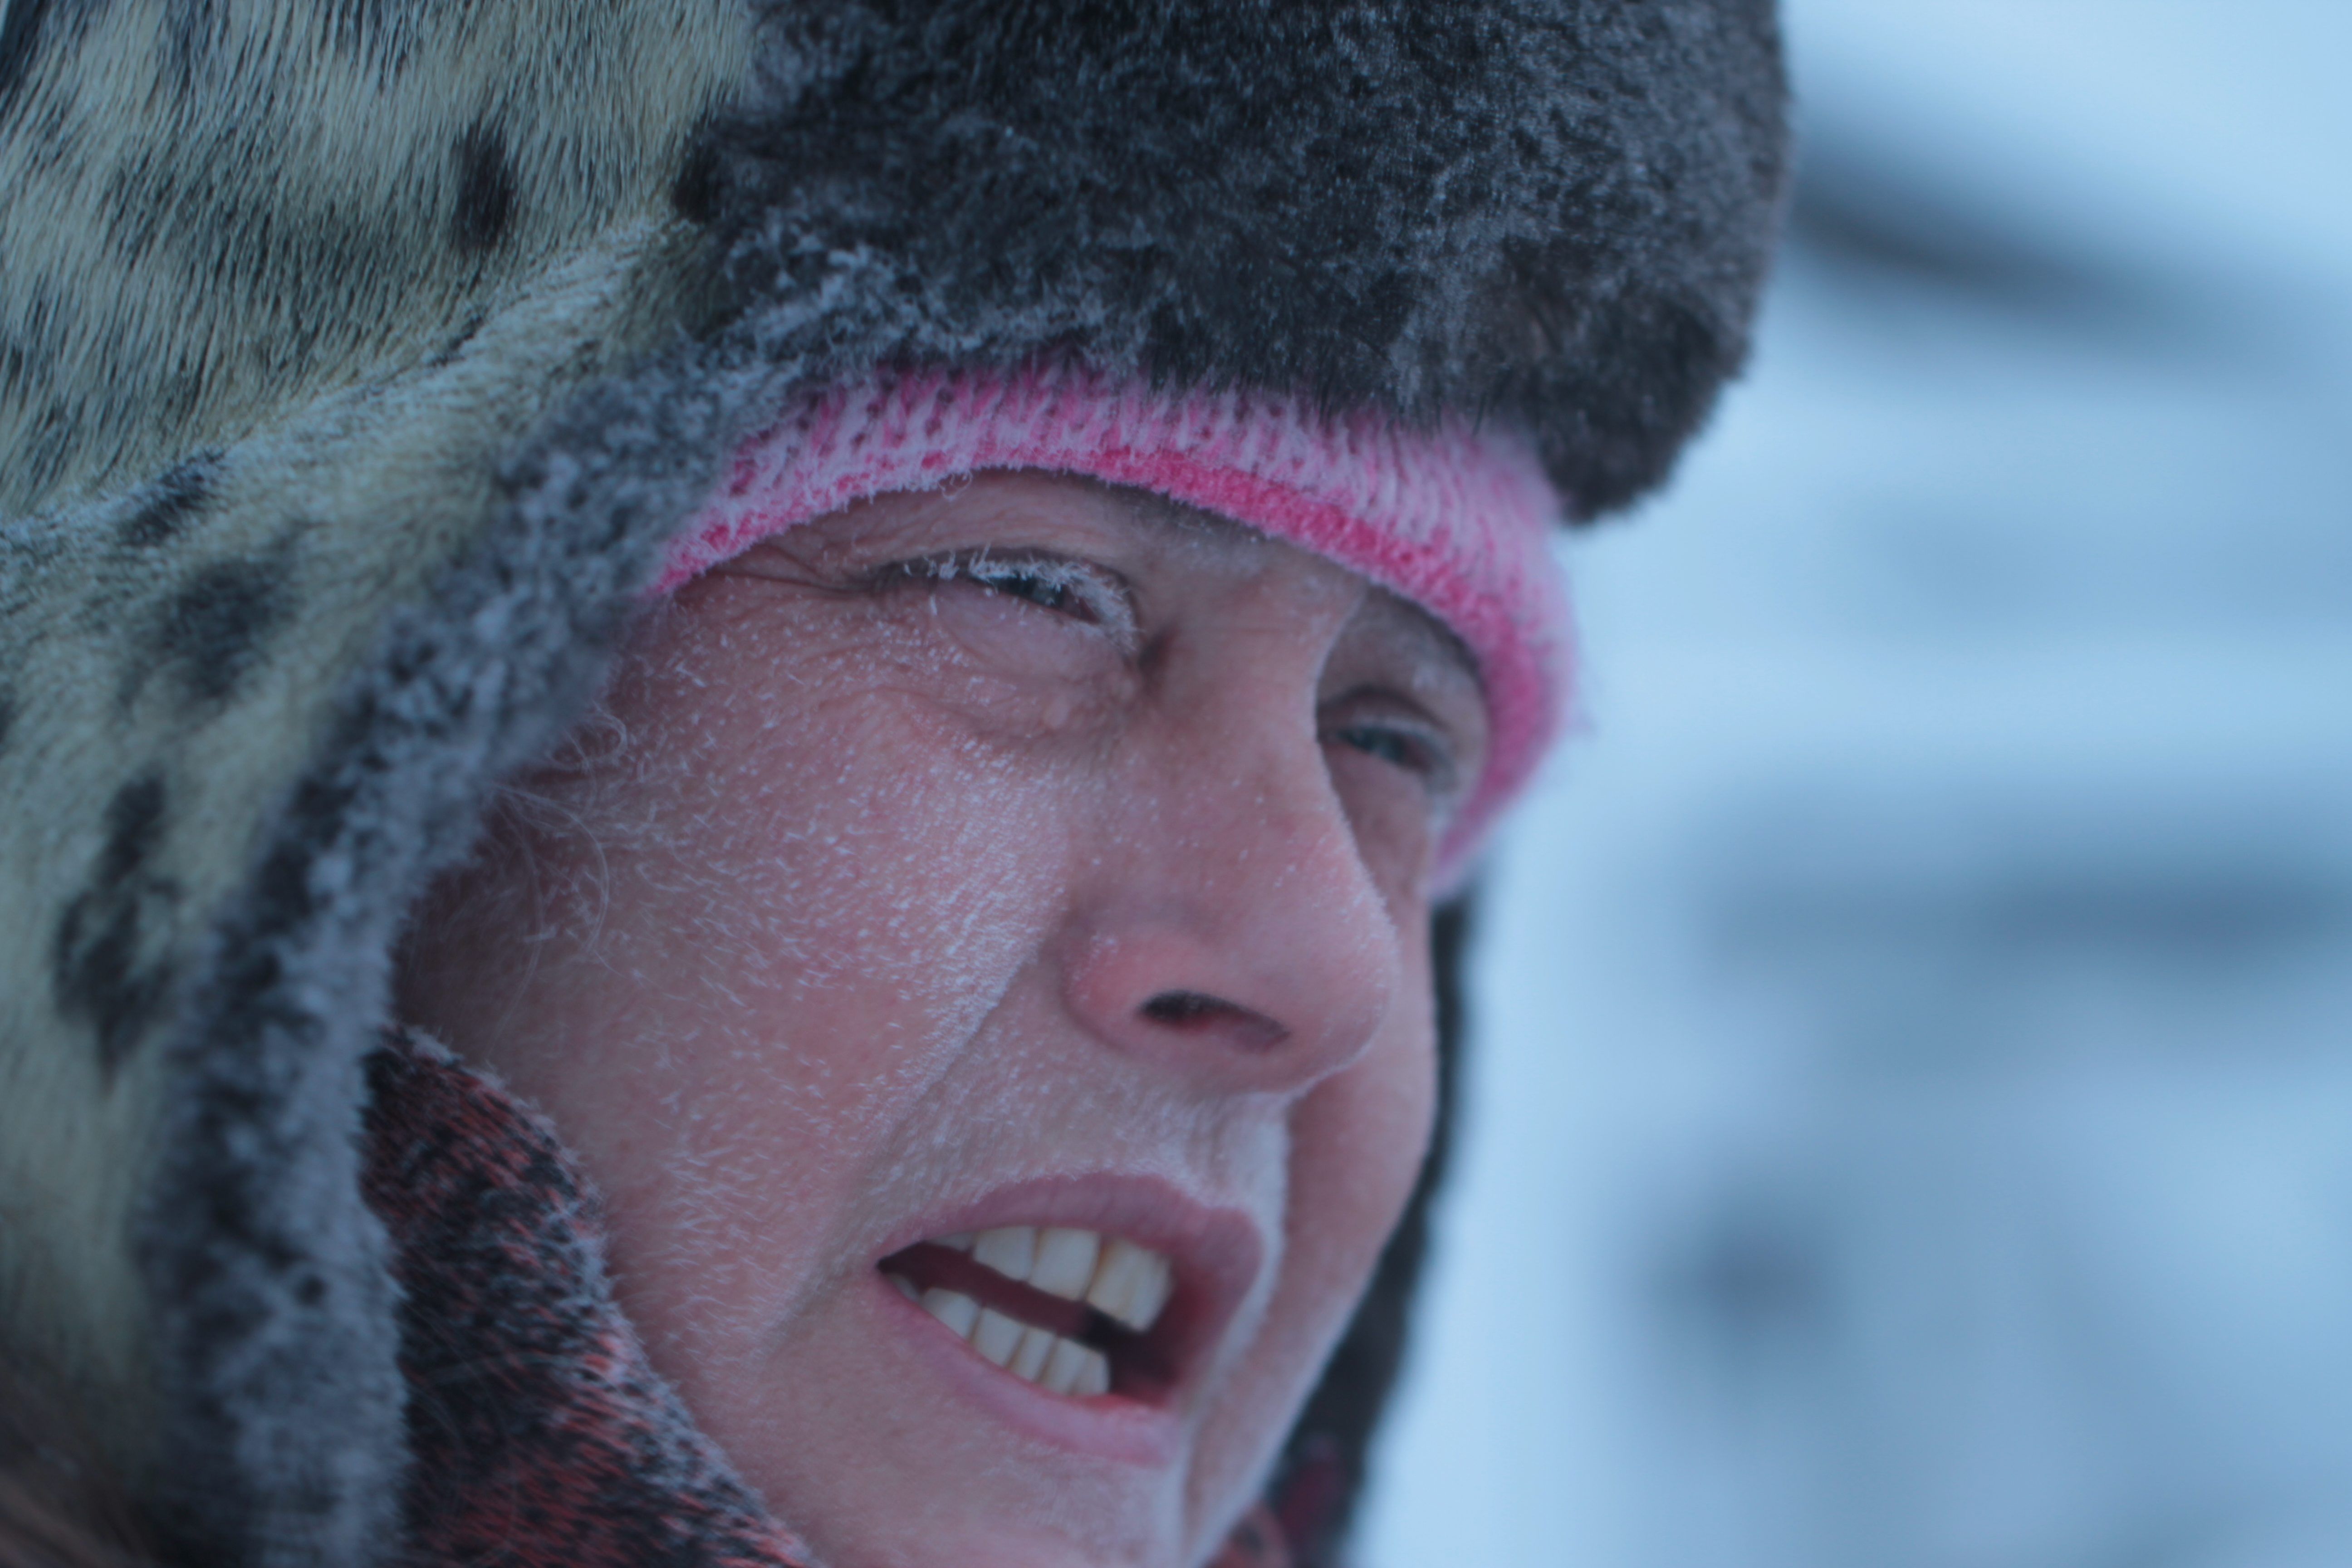 Lerne den echten Wiedergänger kennen: Sue Aikens führt ein arktisches B&B und überlebte einen brutalen Bärenangriff